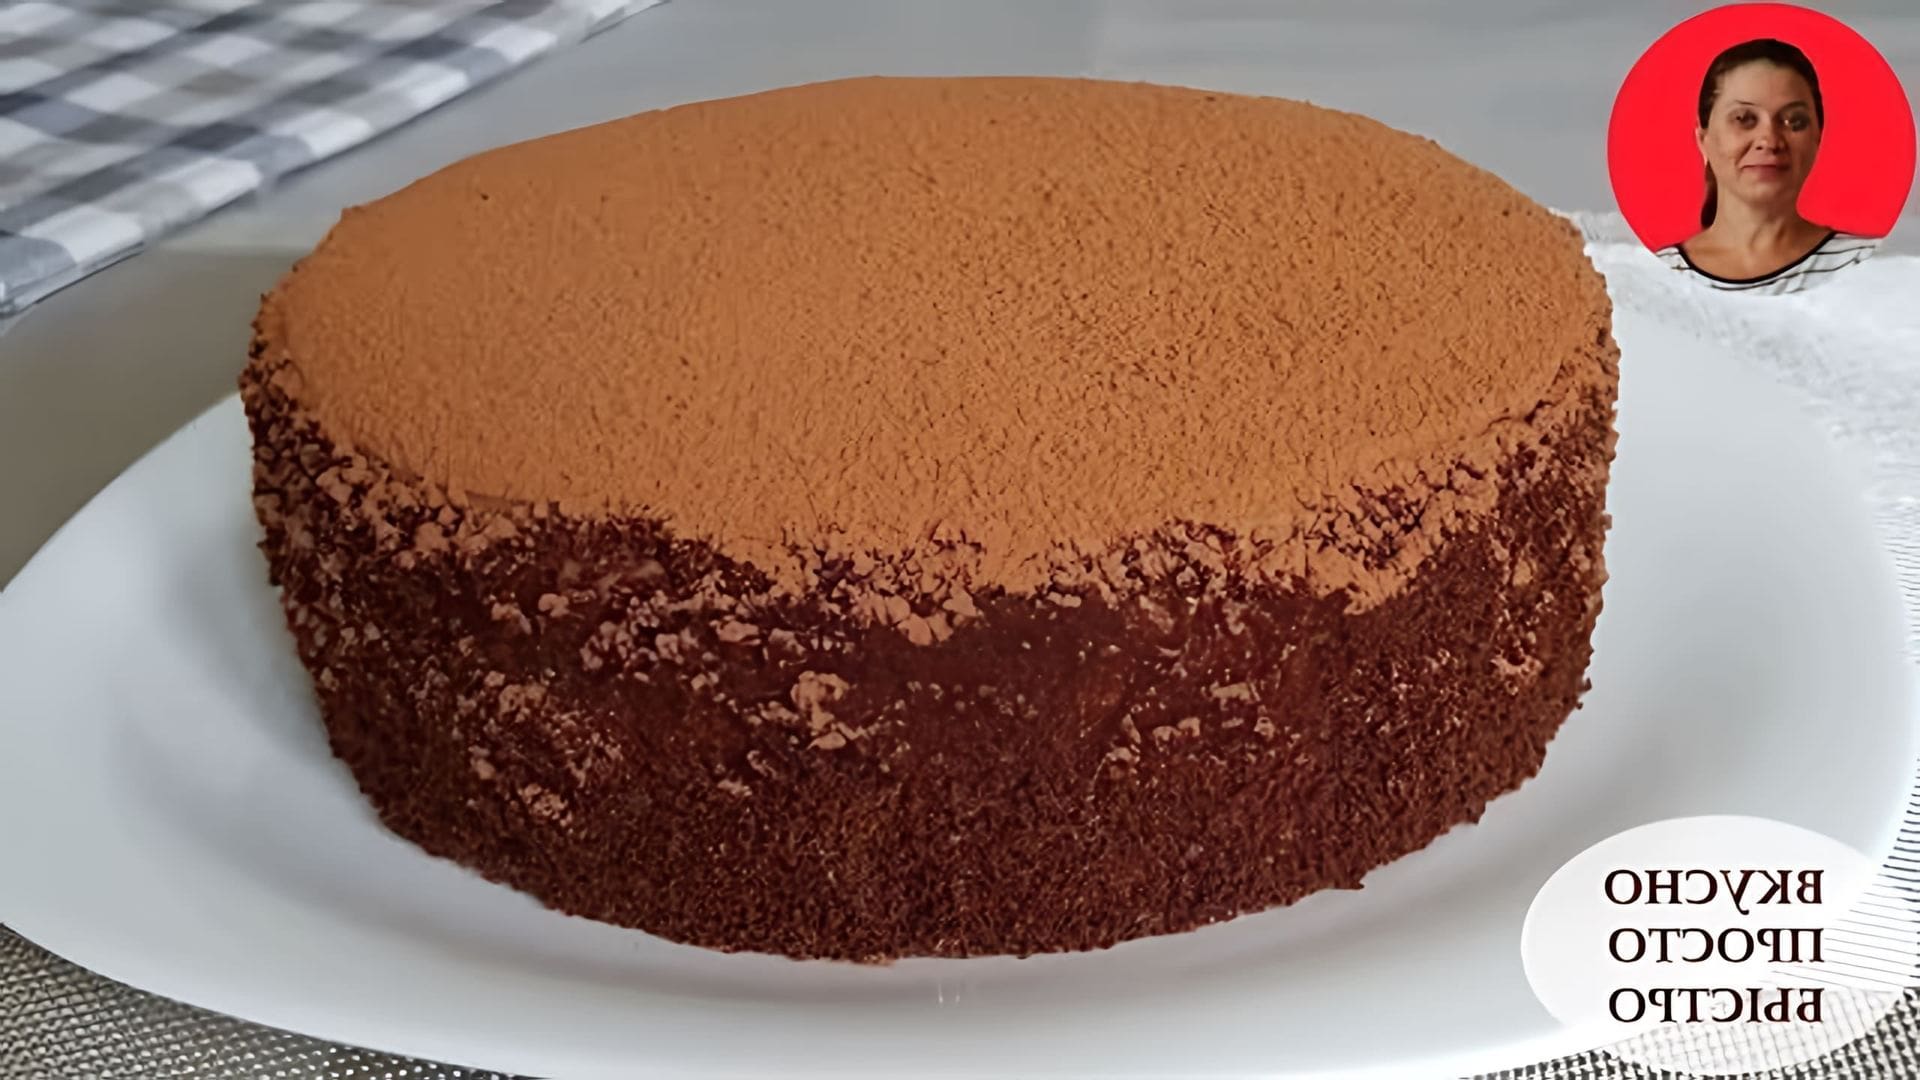 В этом видео Наталья предлагает рецепт шоколадного торта "Шоколадный каприз"